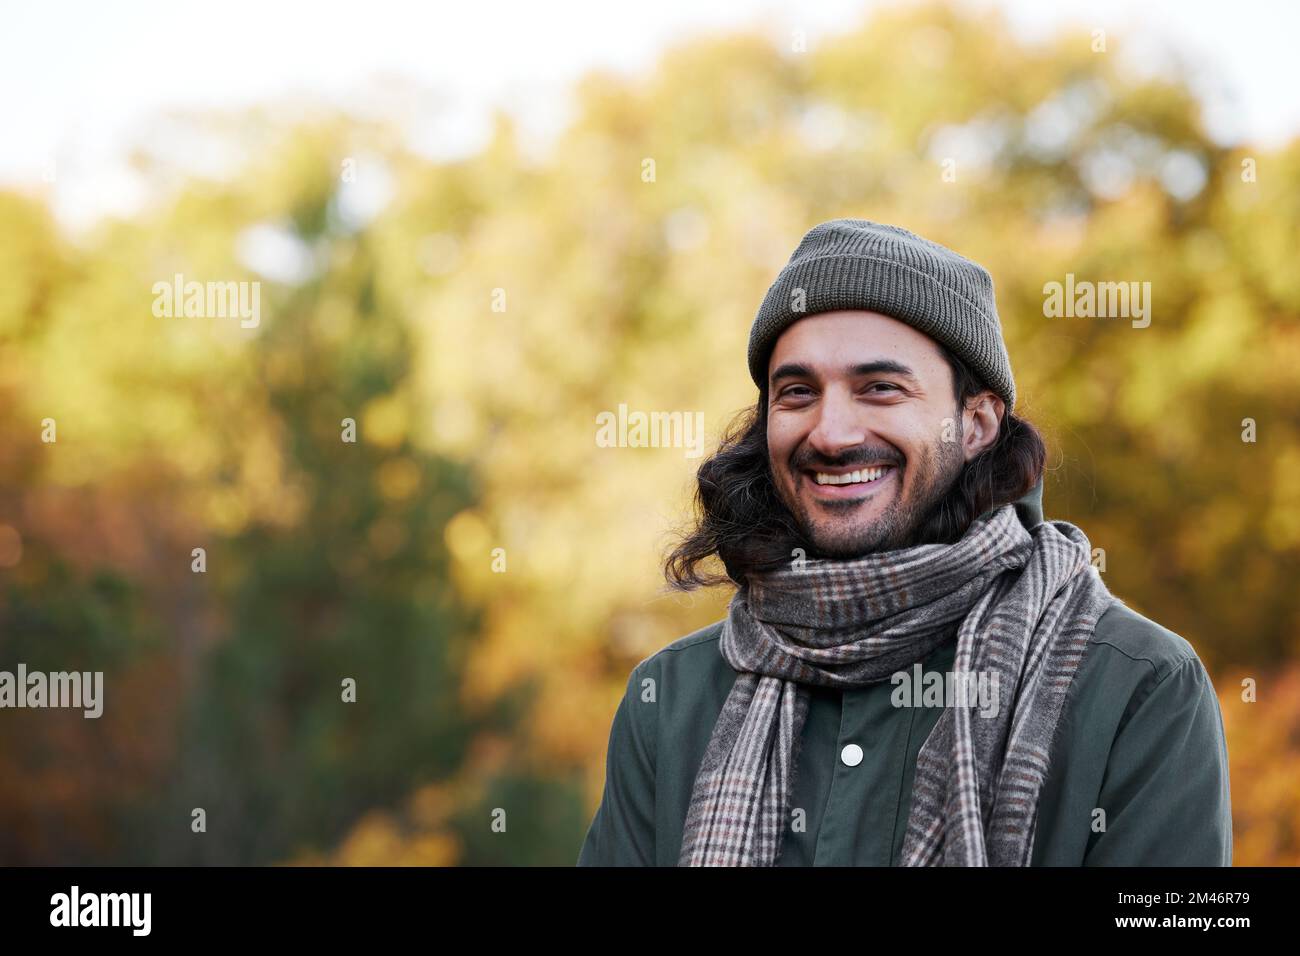 Smiling man looking at camera Stock Photo